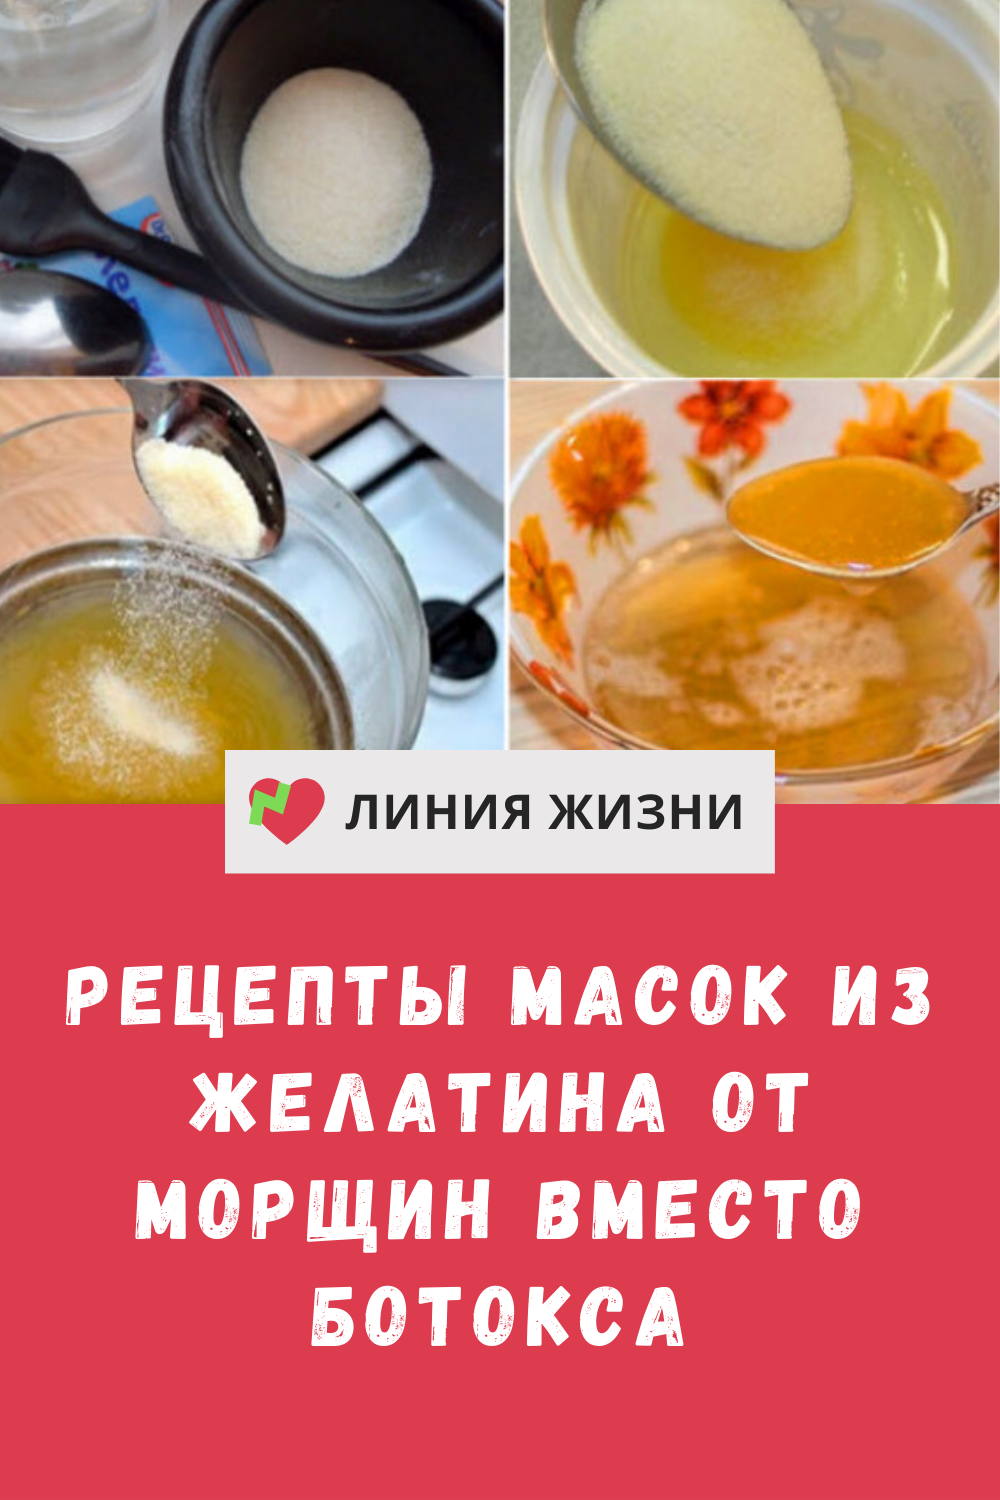 Рецепт маски для лица с желатином